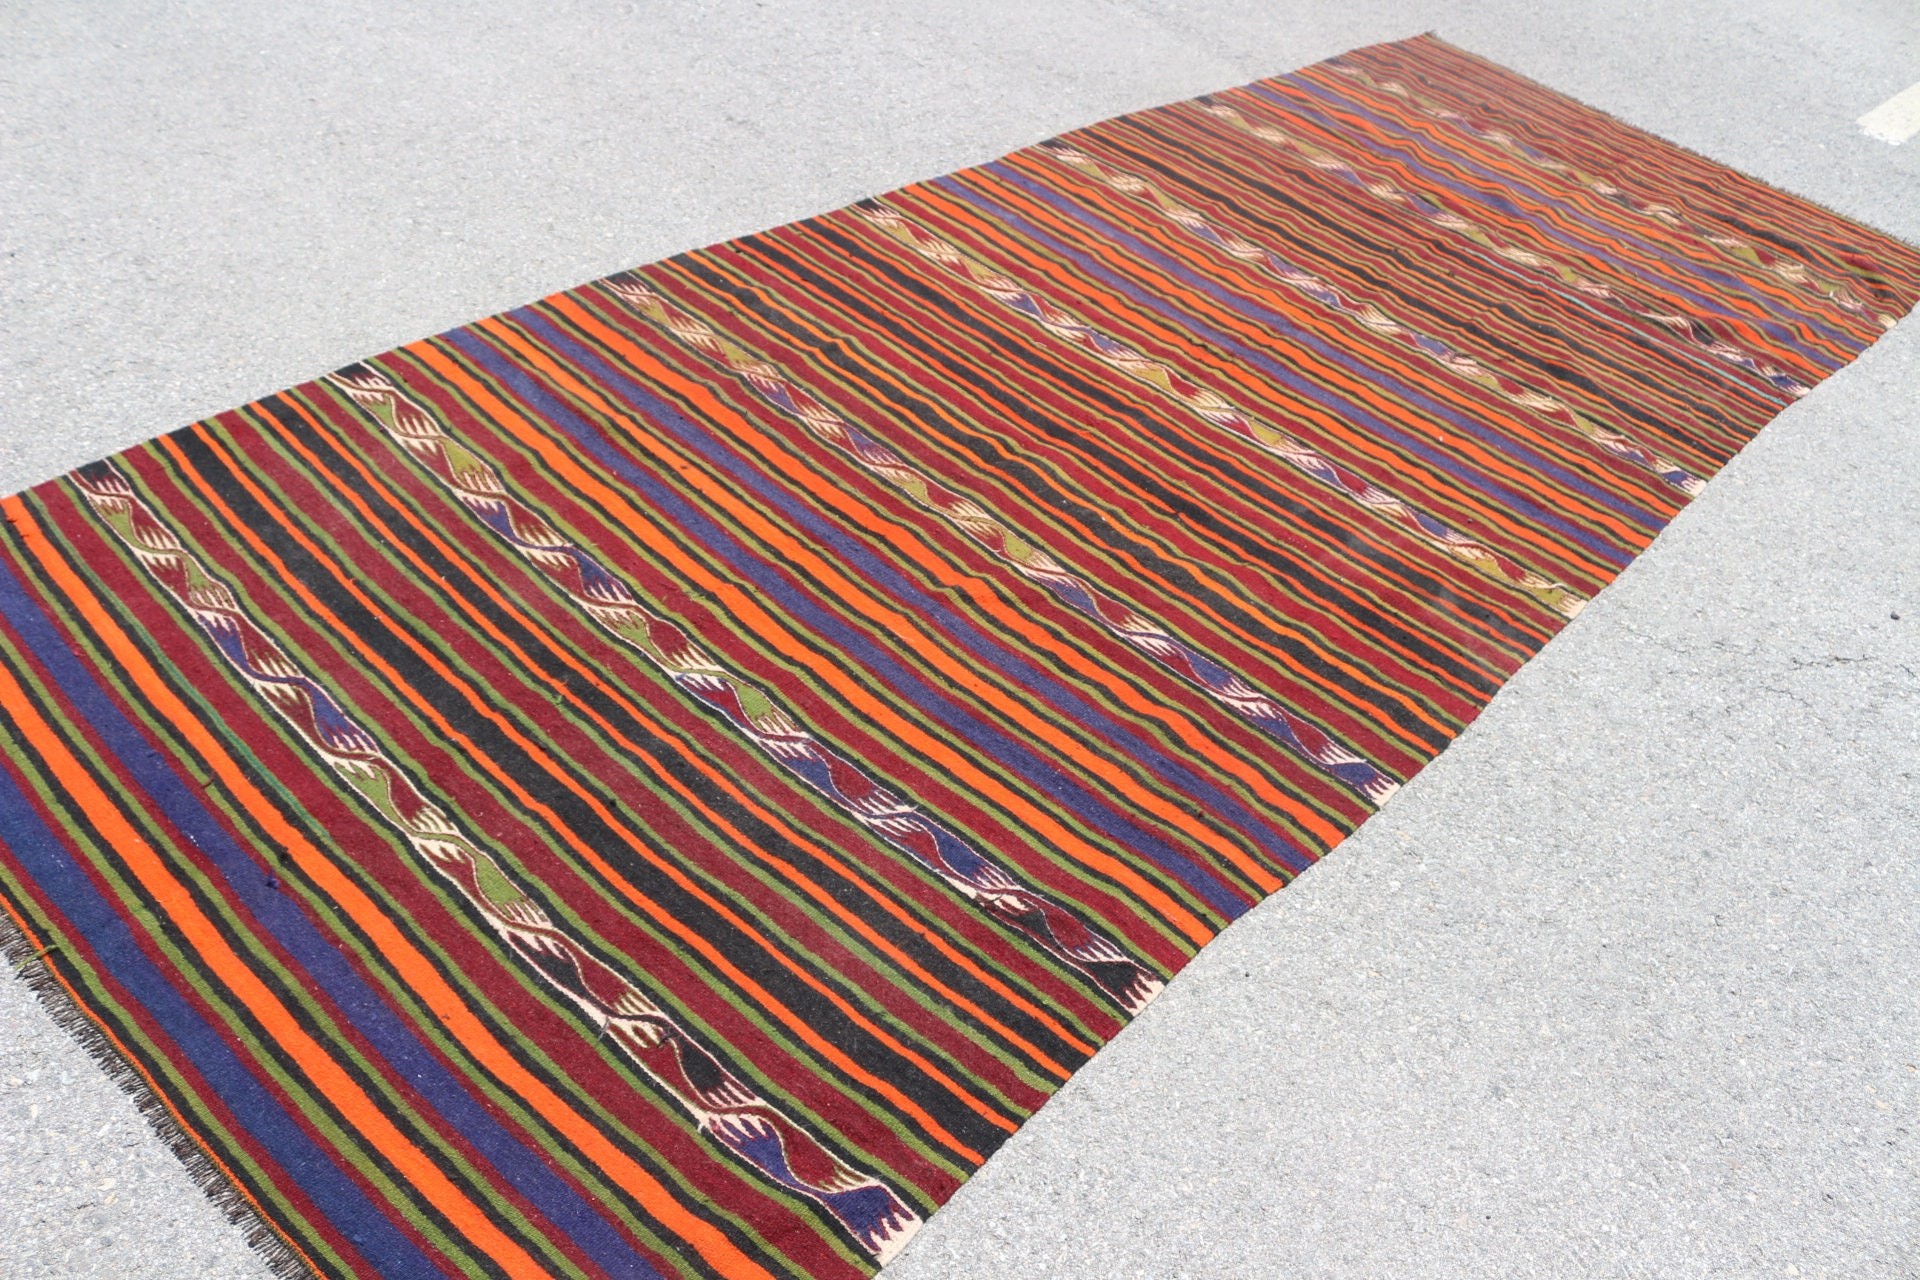 Vintage Rugs, Orange Oriental Rug, Rugs for Runner, Floor Rug, Cool Rug, 5.1x13.1 ft Runner Rug, Hallway Rug, Turkish Rugs, Stair Rug